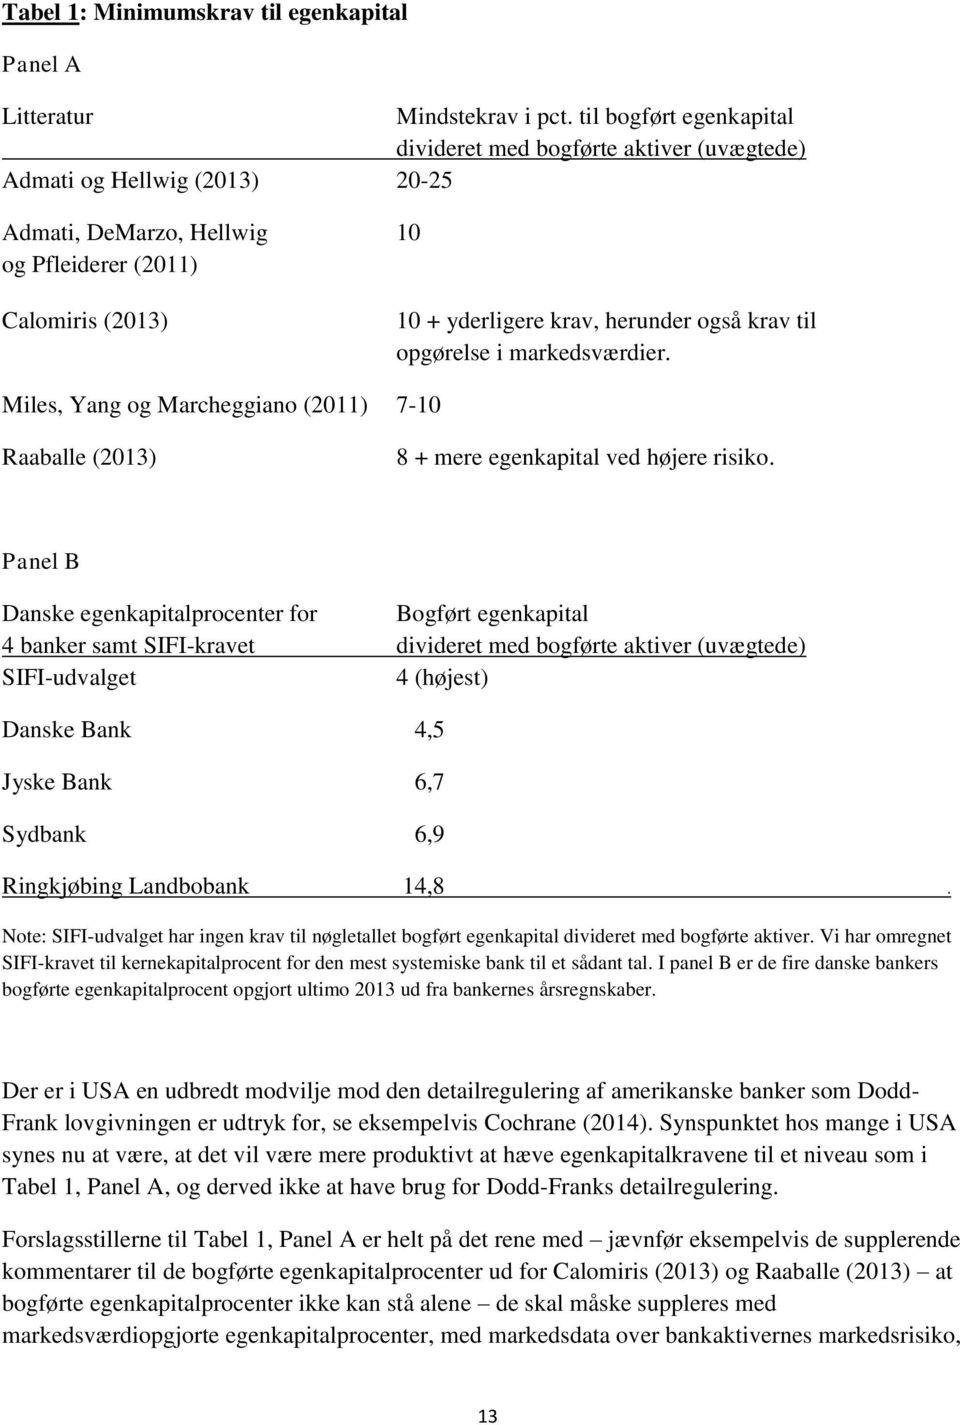 krav til opgørelse i markedsværdier. Miles, Yang og Marcheggiano (2011) 7-10 Raaballe (2013) 8 + mere egenkapital ved højere risiko.